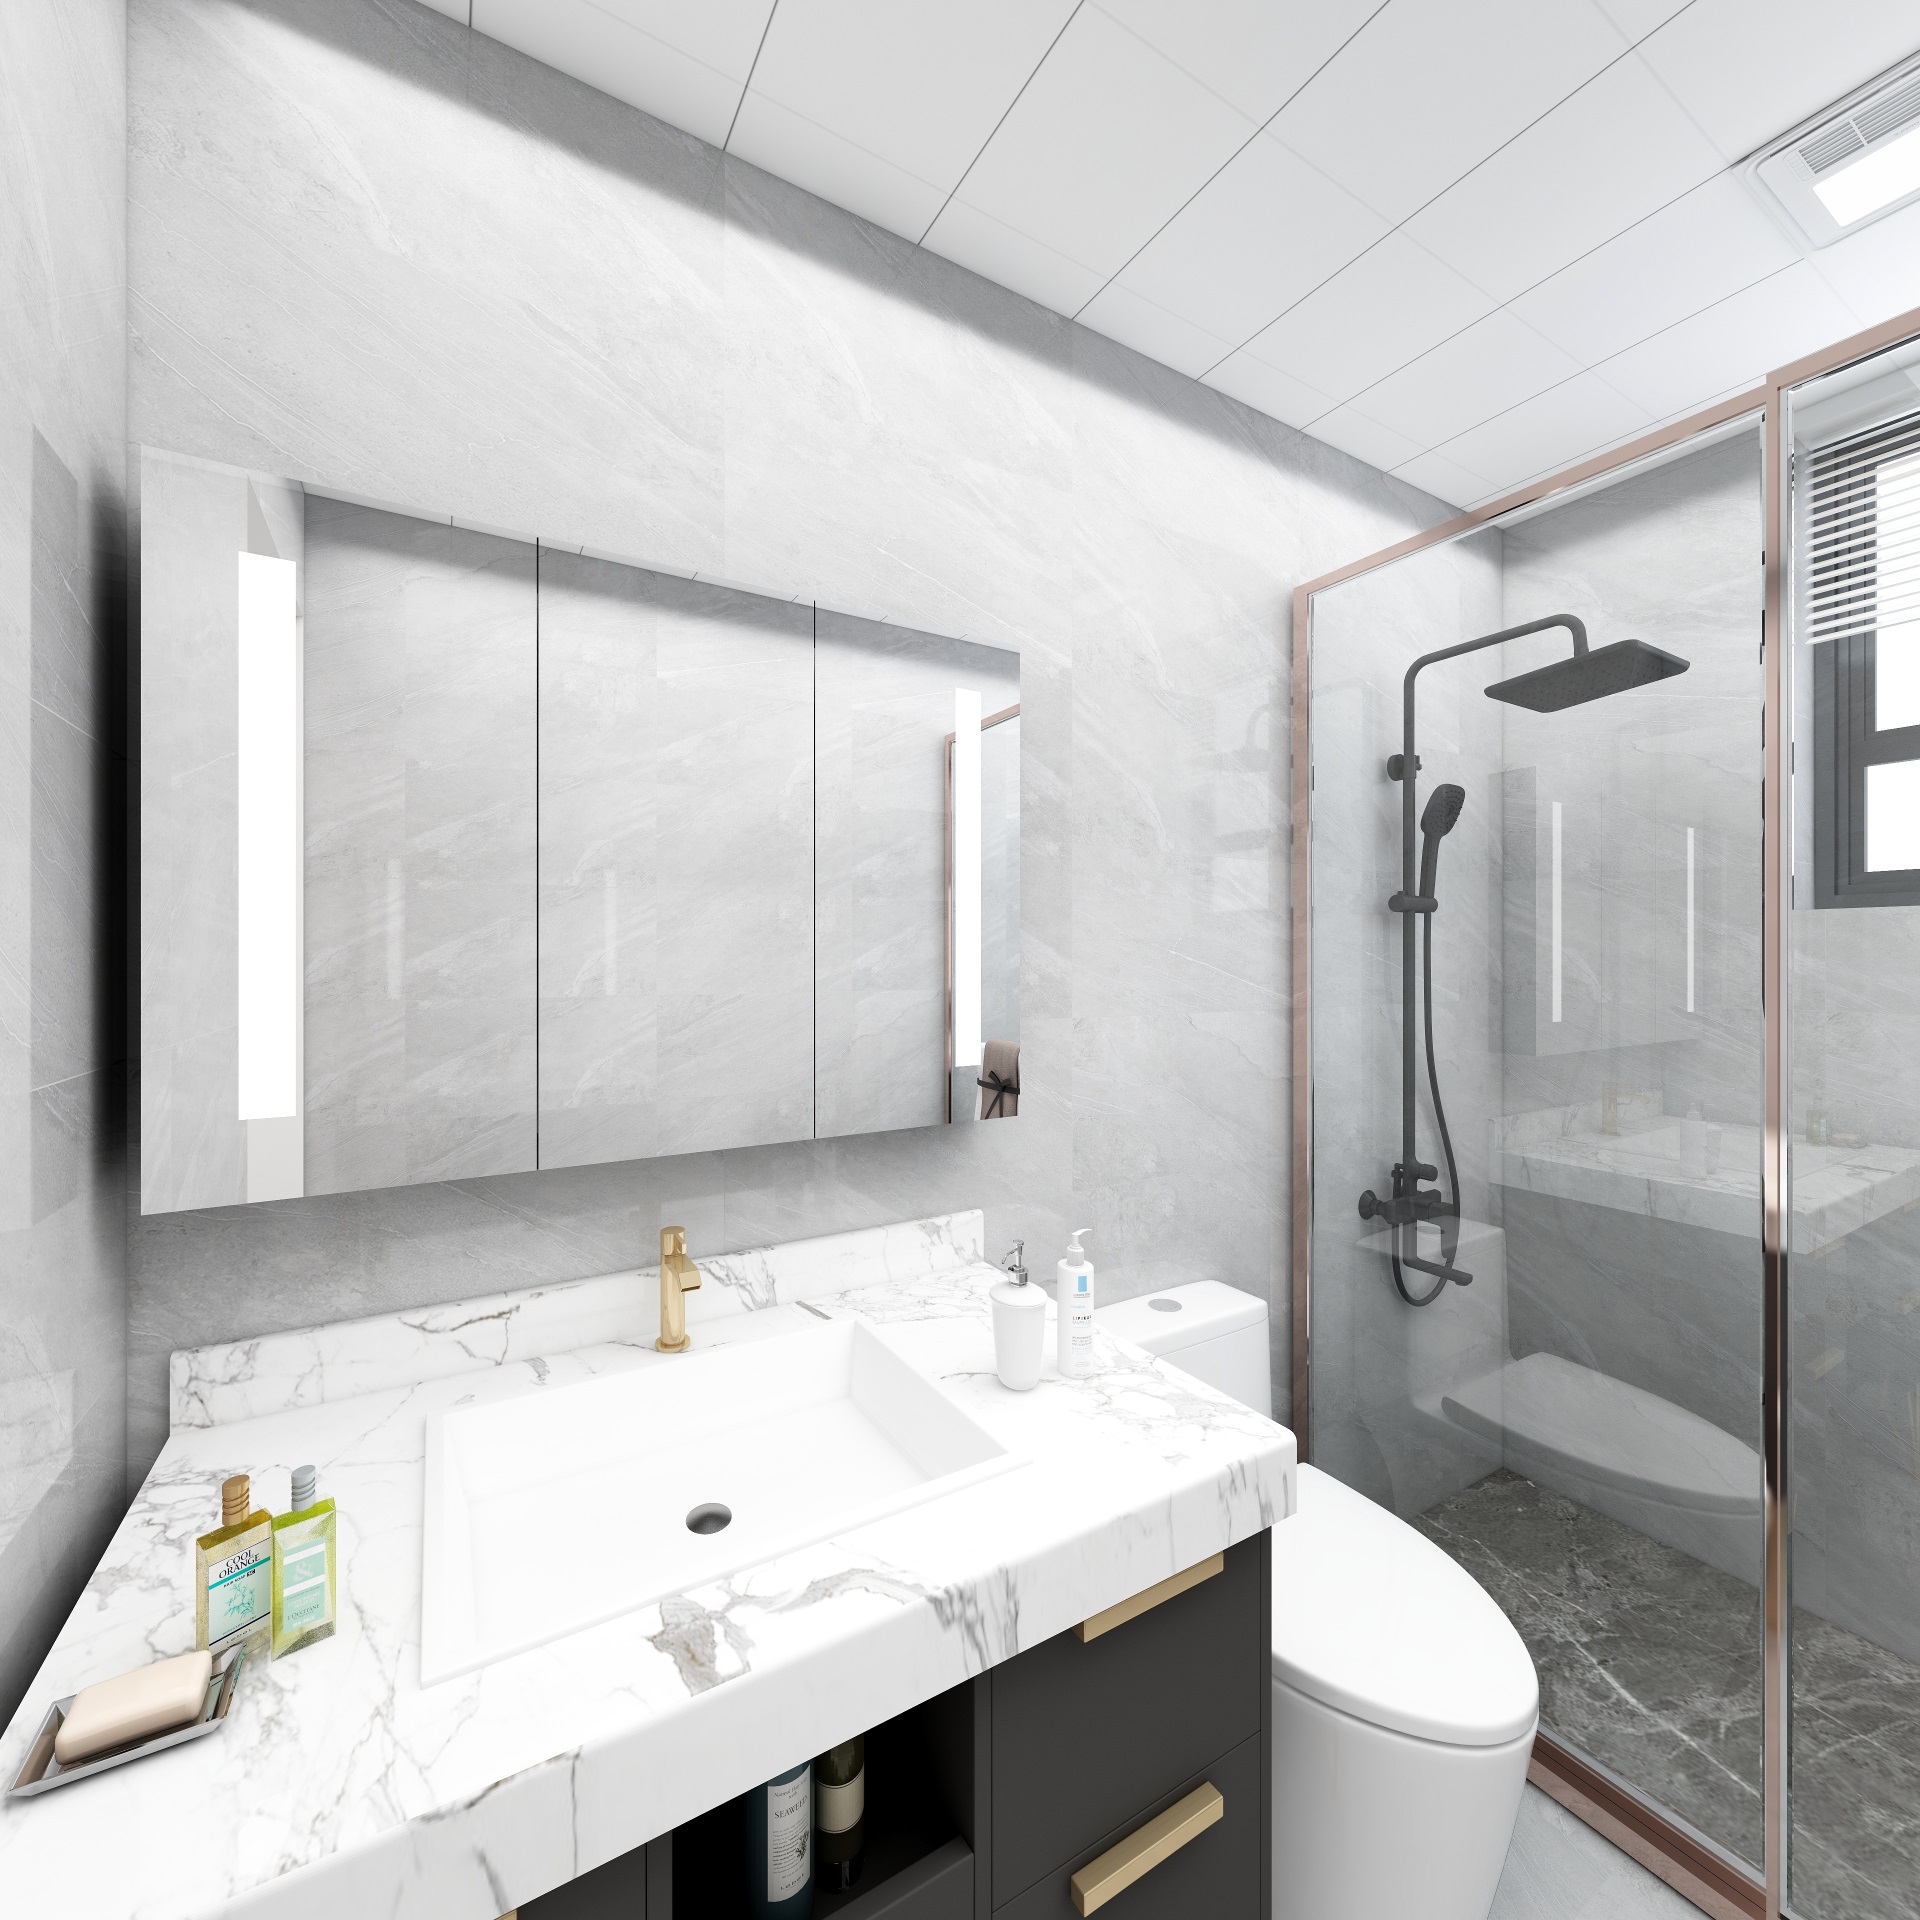 卫生间设计为冷静的灰色调，对区域的进行了干湿分设计，室内秩序感强。